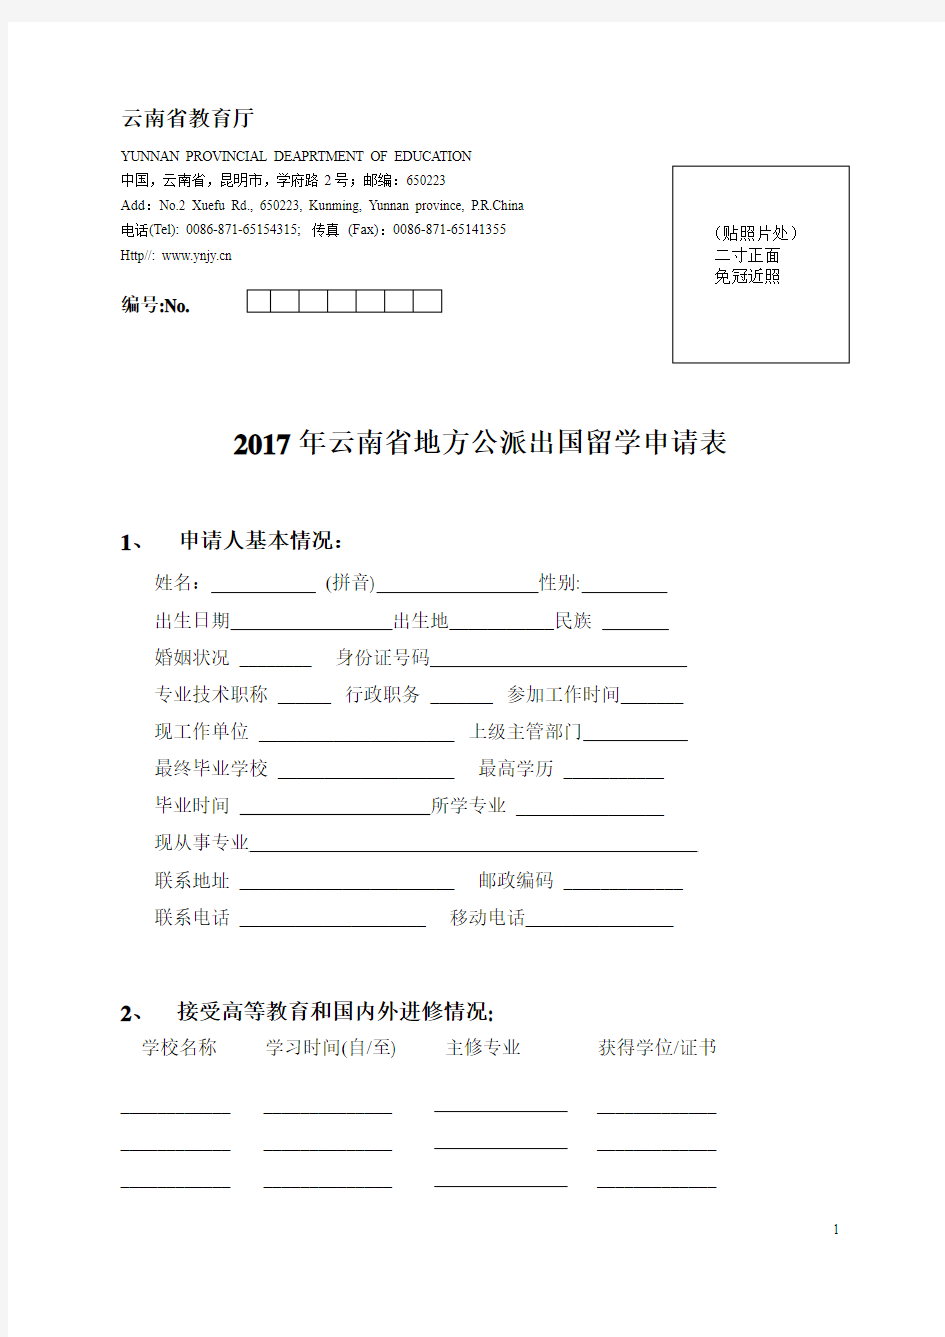 2017年云南省地方公派出国留学申请表